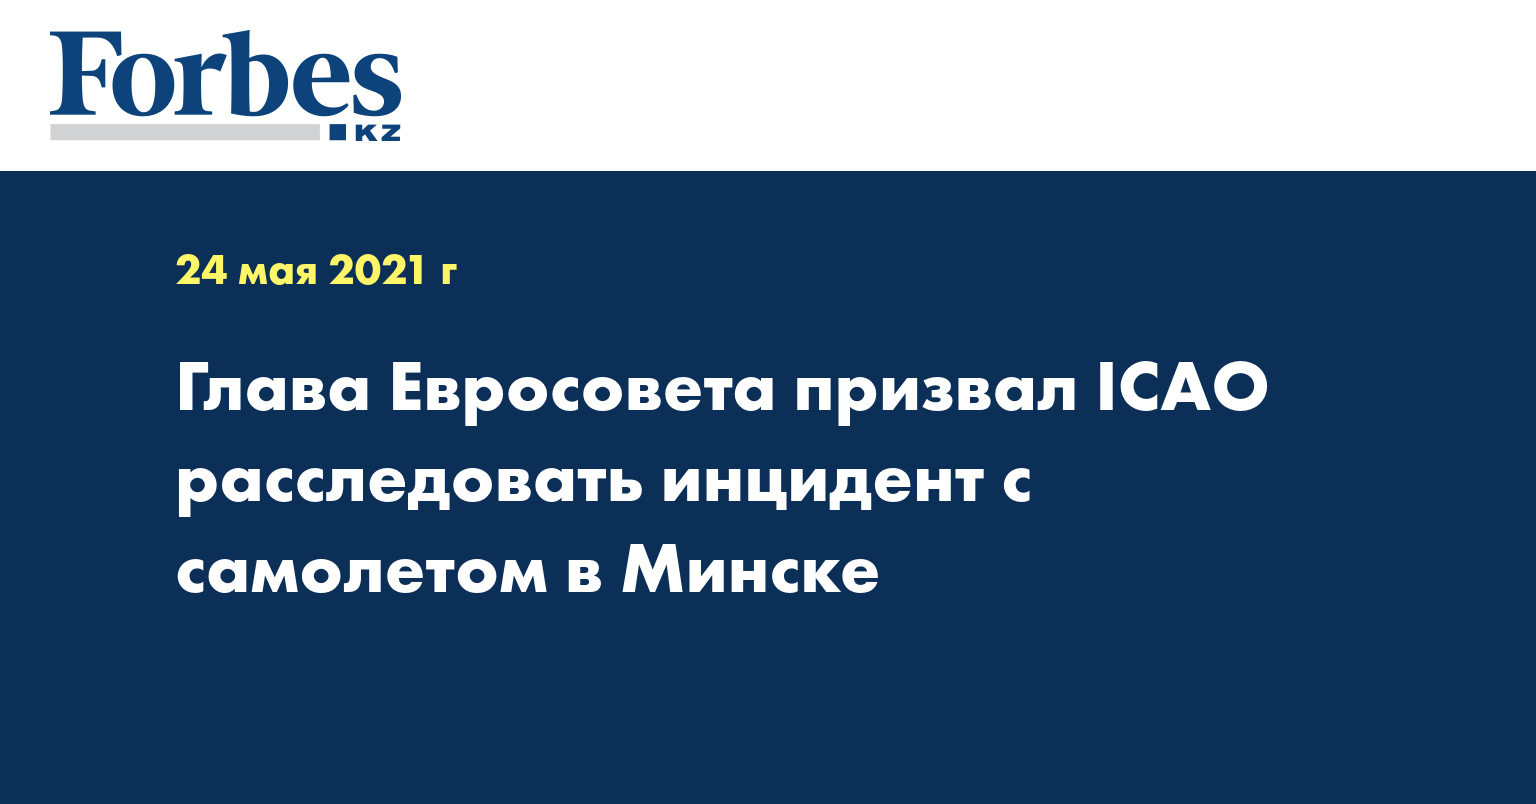 Глава Евросовета призвал ICAO расследовать инцидент с самолетом в Минске